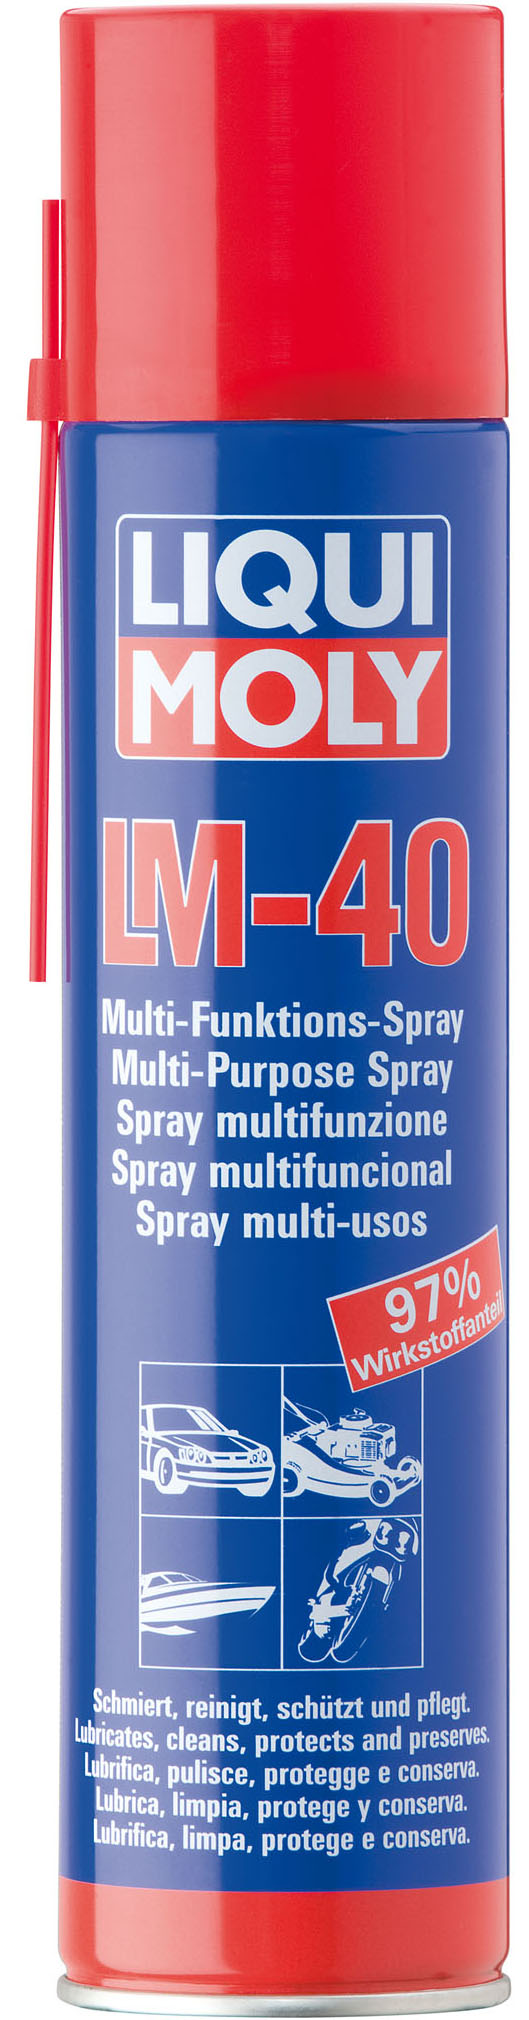 Купить запчасть LIQUI MOLY - 3391 Универсальное средство  LM 40 Multi-Funktions-Spray